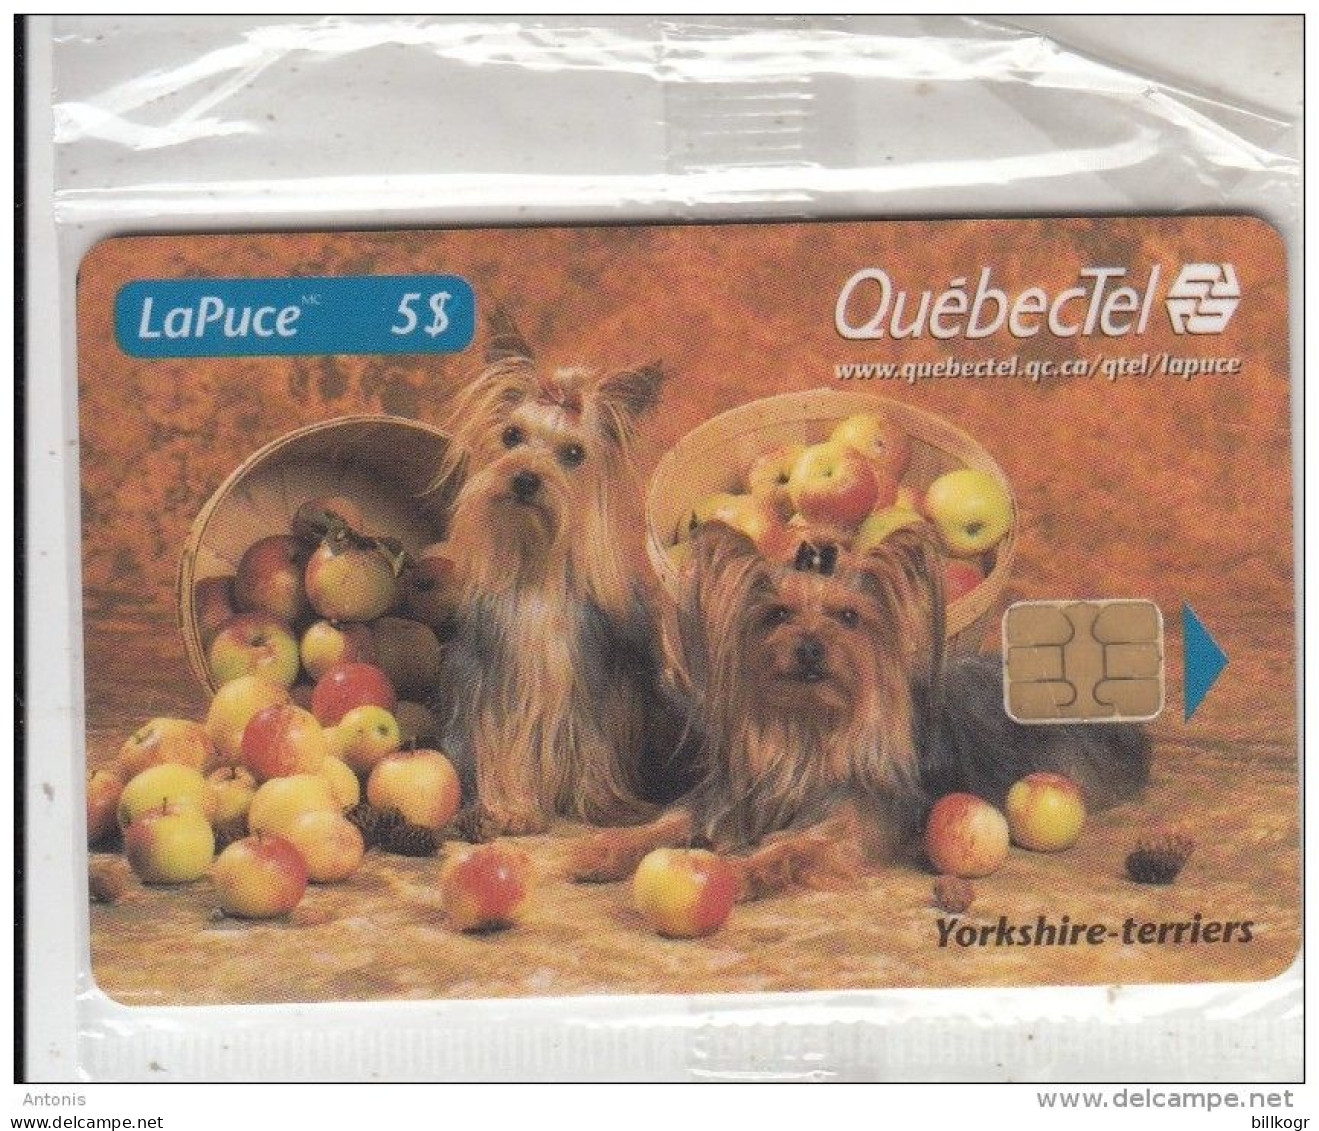 CANADA - Dogs, QuebecTel Telecard $5, Tirage 5000, 10/98, Mint - Kanada